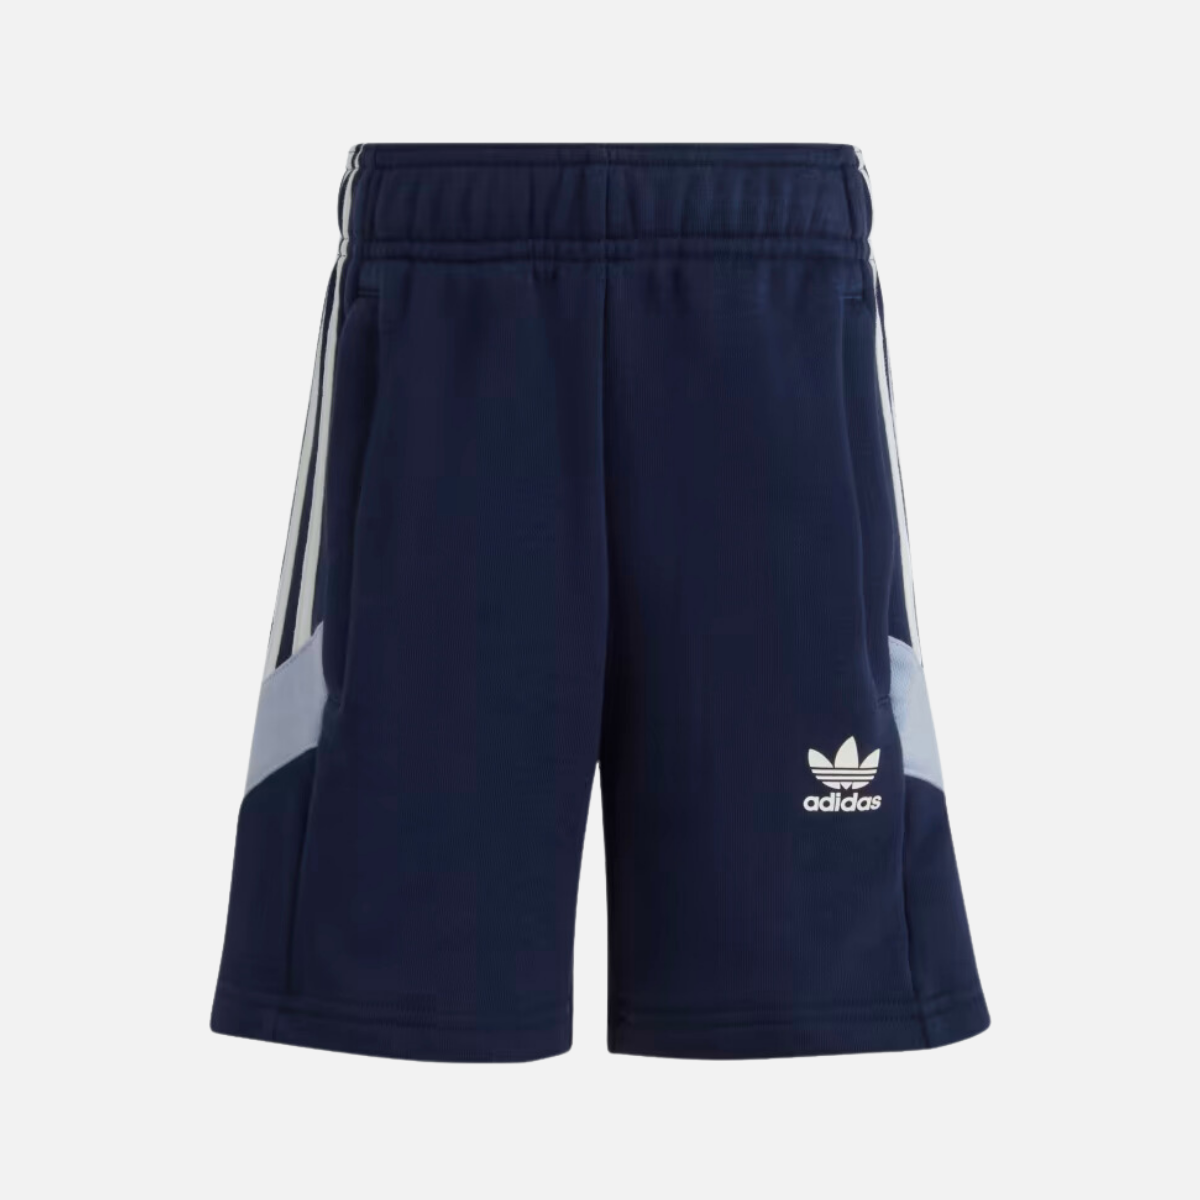 Adidas Rekive Kids Unisex Shorts and T-shirt Set (3-7 Year) -Night Indigo